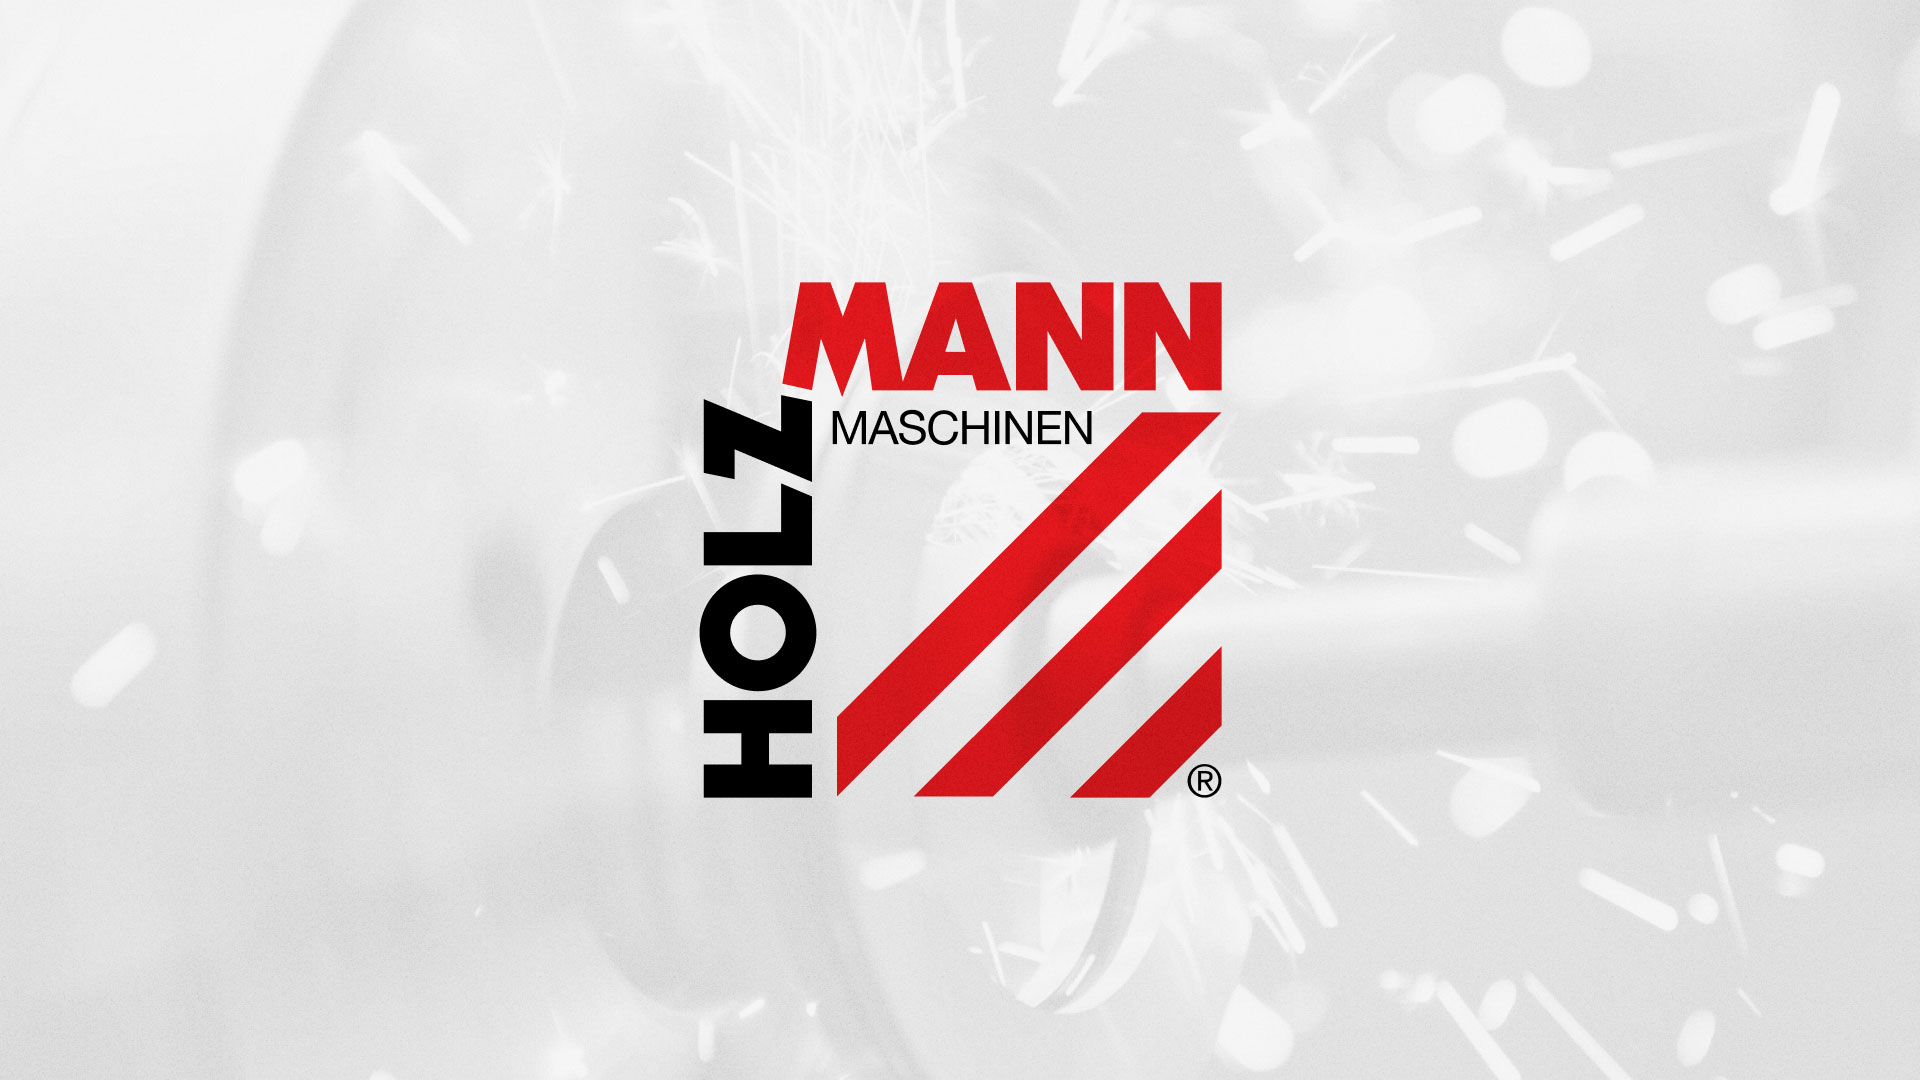 Создание сайта компании «HOLZMANN Maschinen GmbH» в 